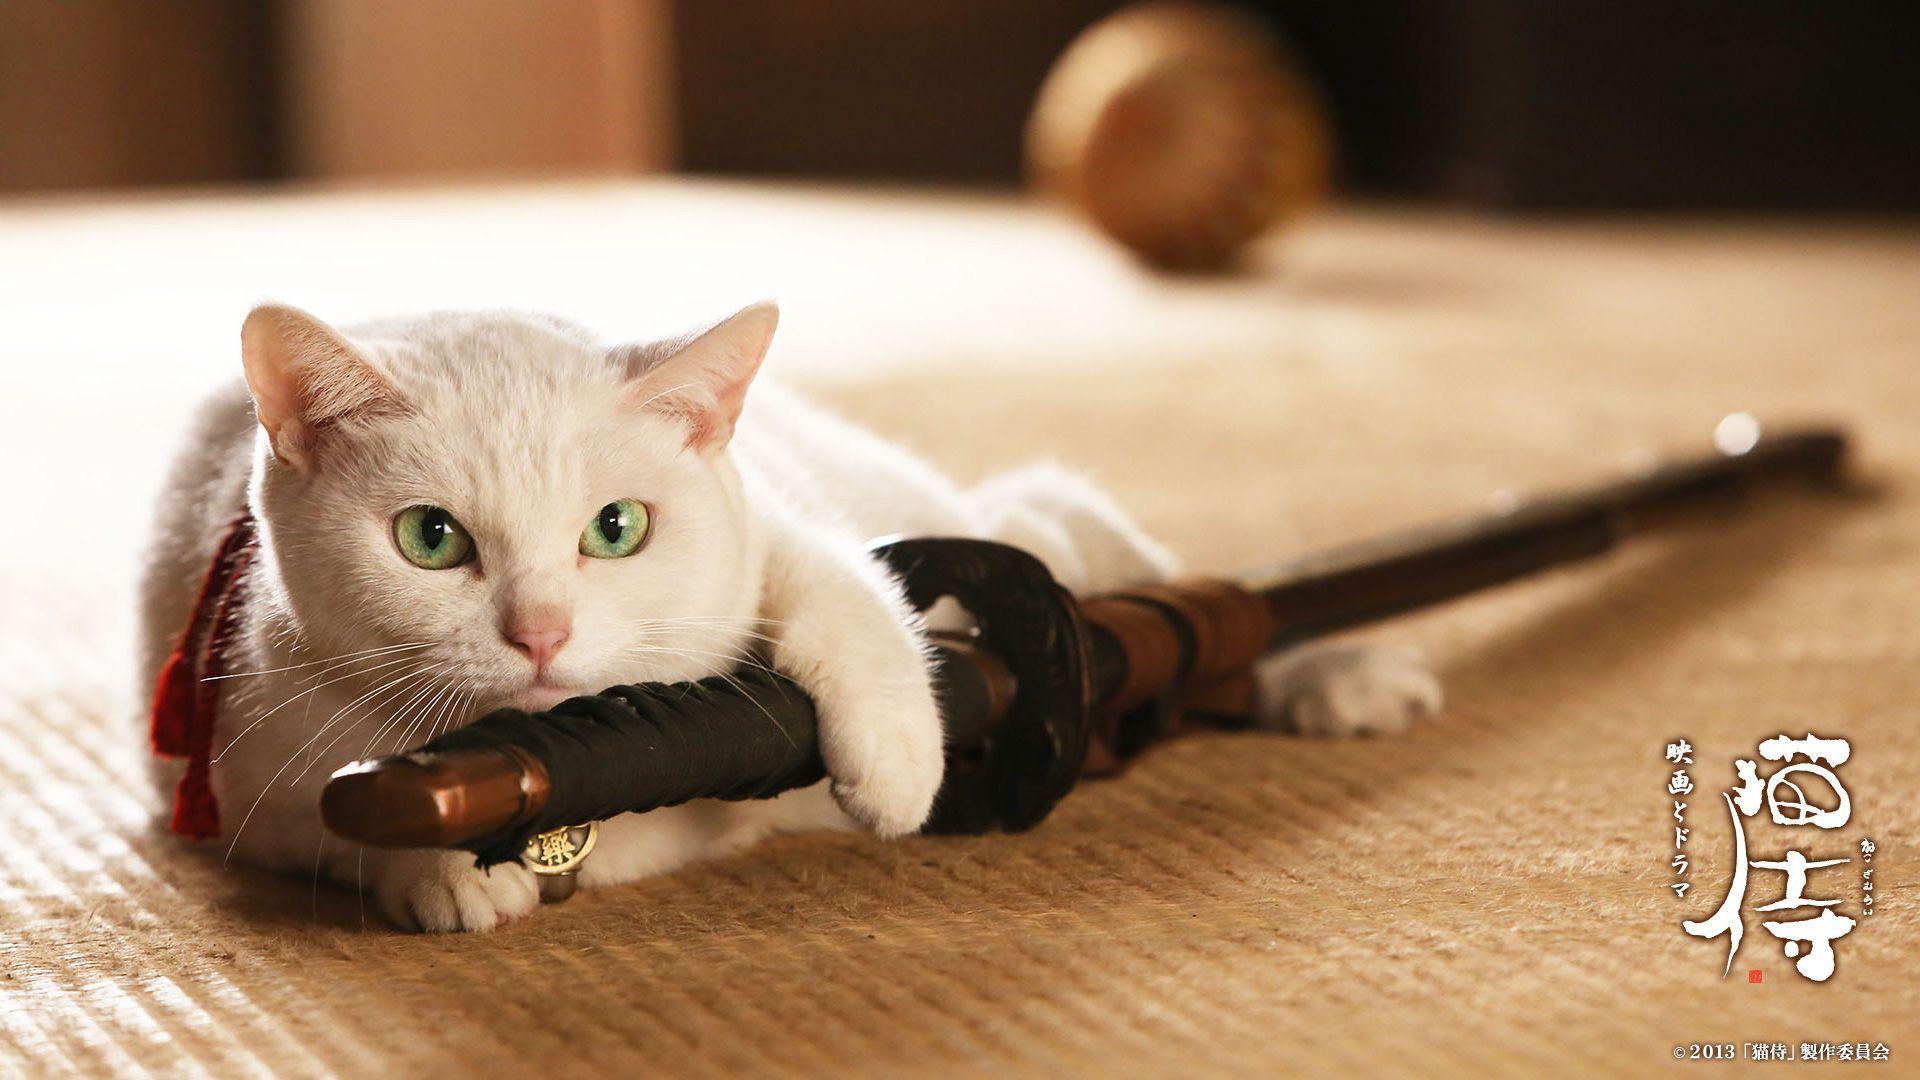 biały kot z mieczem samuraja neko zamurai